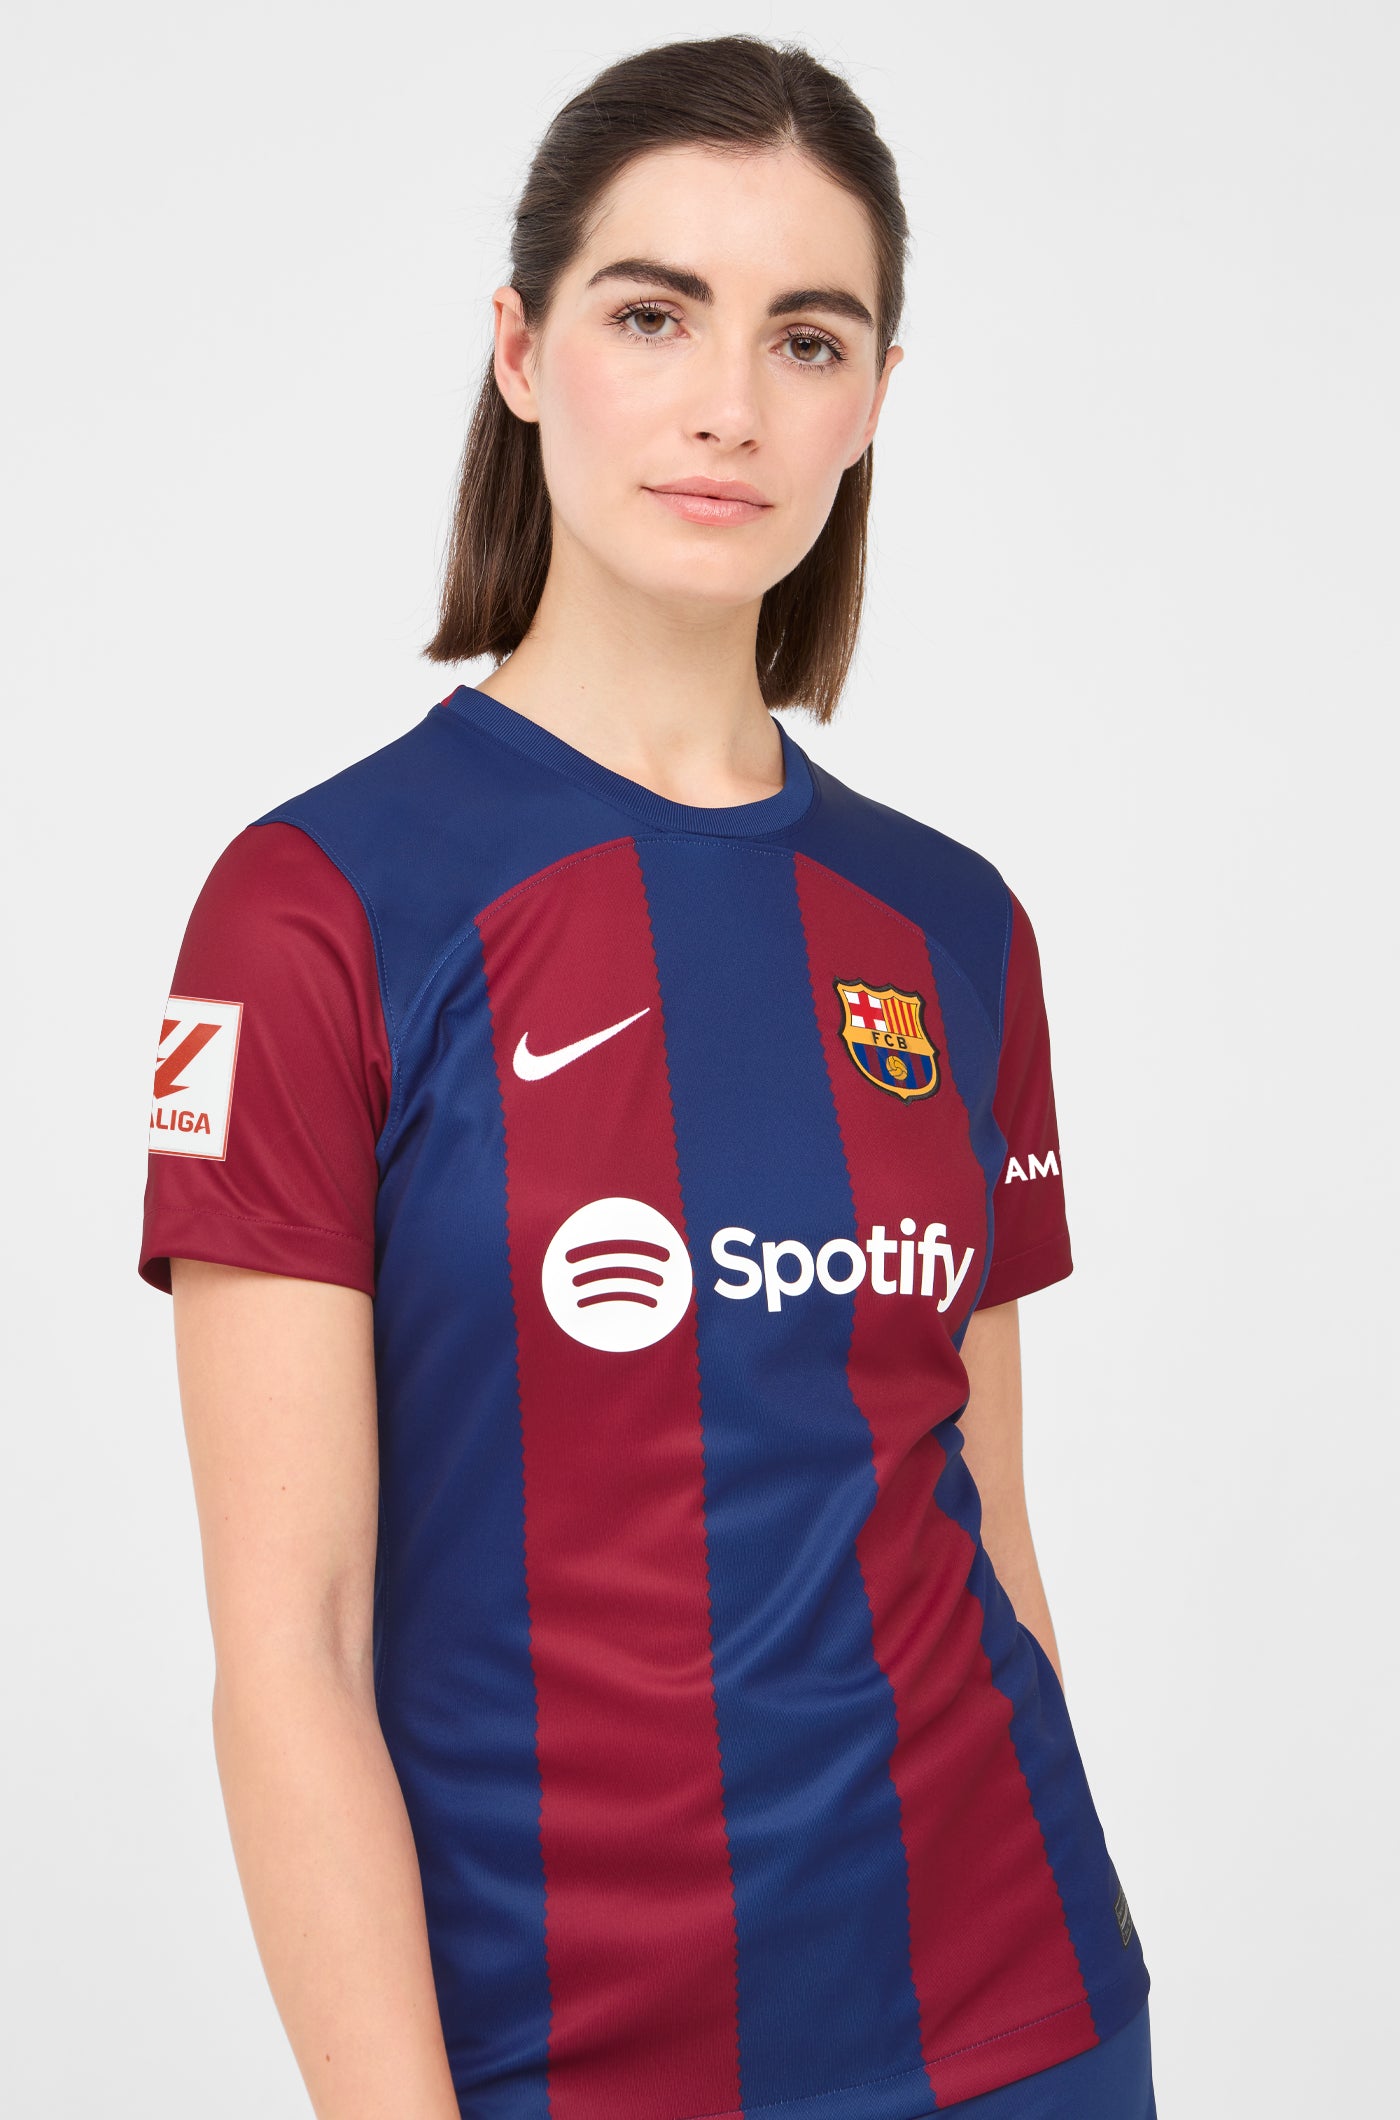 LFP FC Barcelona home shirt 23/24 - Women - FERRAN